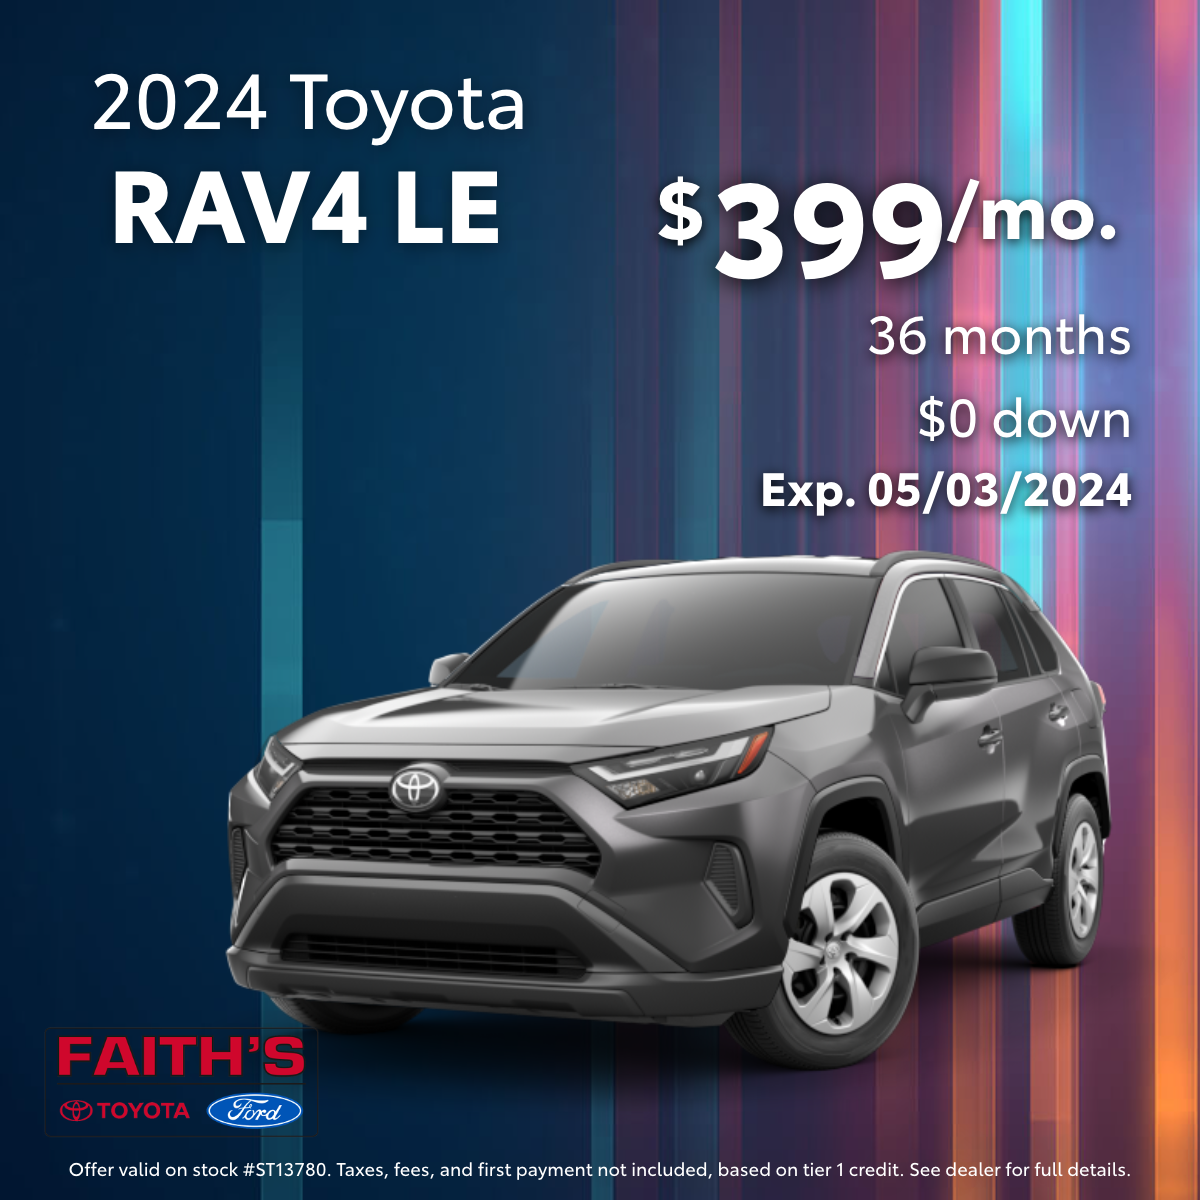 2024 Toyota RAV4 Lease Offer | Faiths Toyota